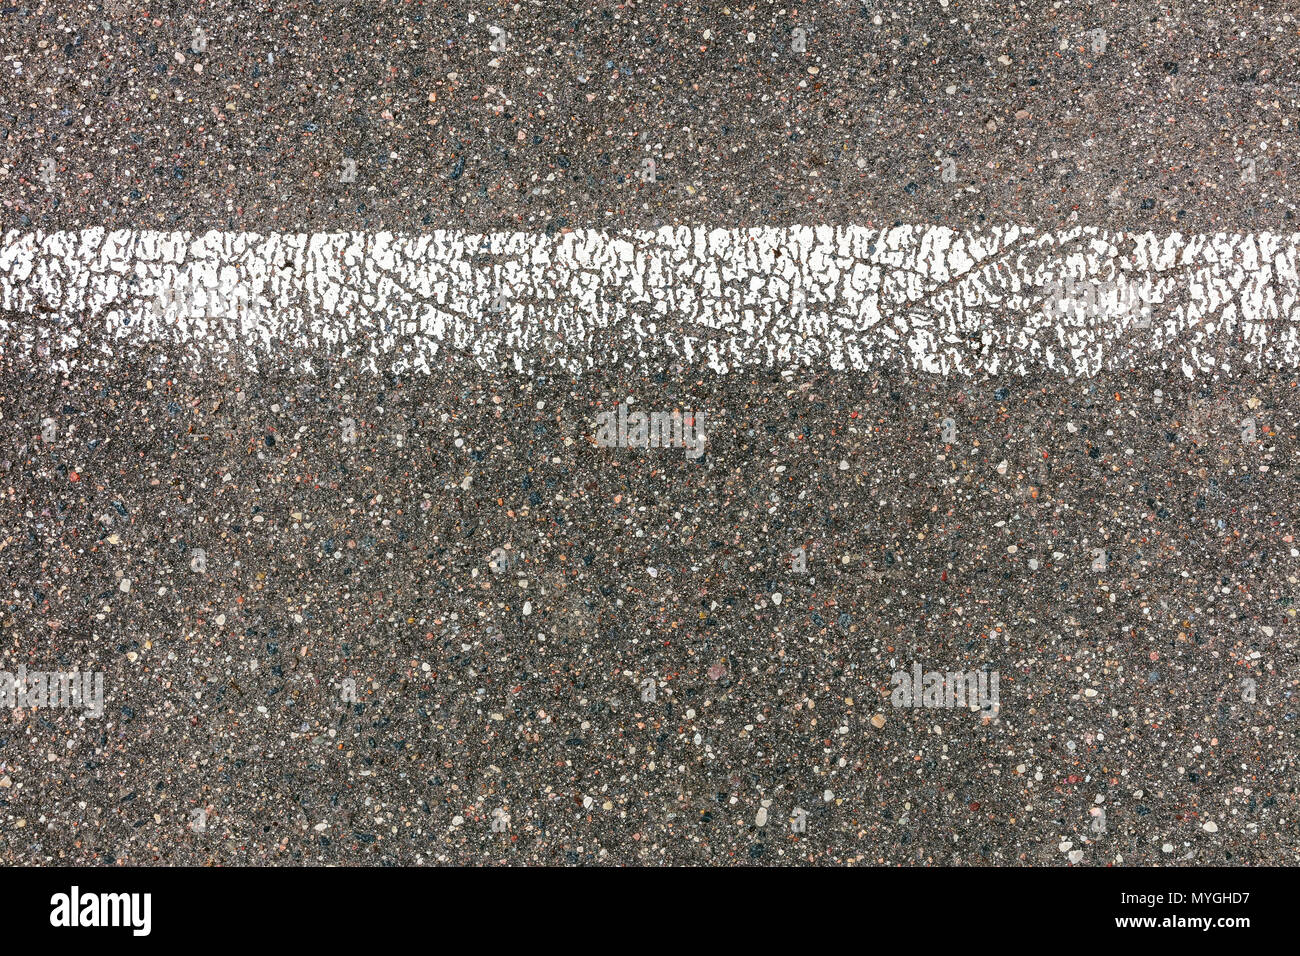 Carretera de asfalto gris con textura agrietada línea divisoria blanca Foto de stock